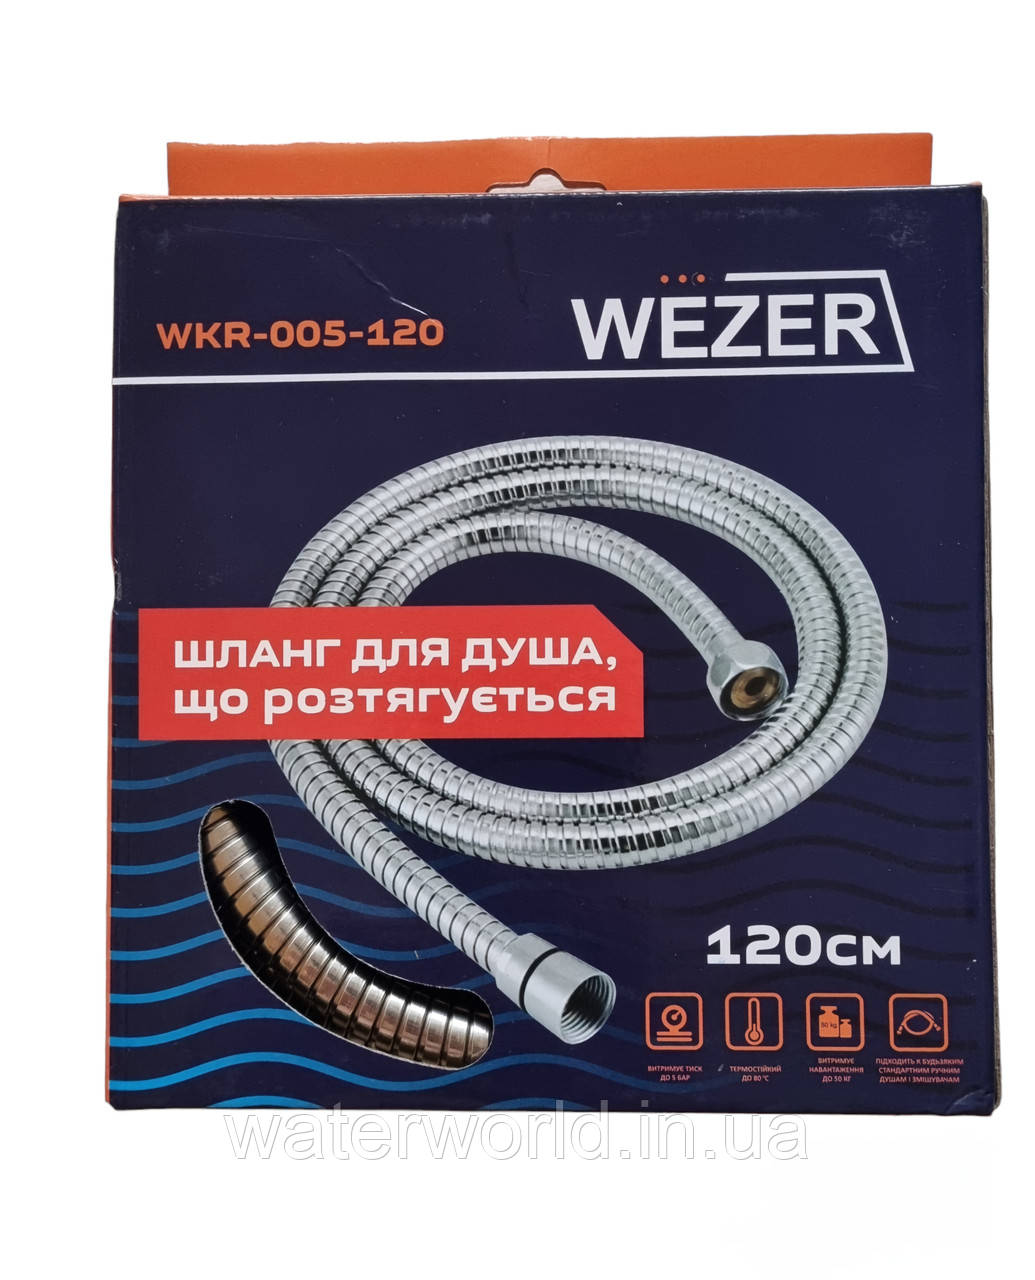 Розтяжний шланг для душу 120см в металевому обплетенні з хромованим покриттям WEZER WKR-005-120